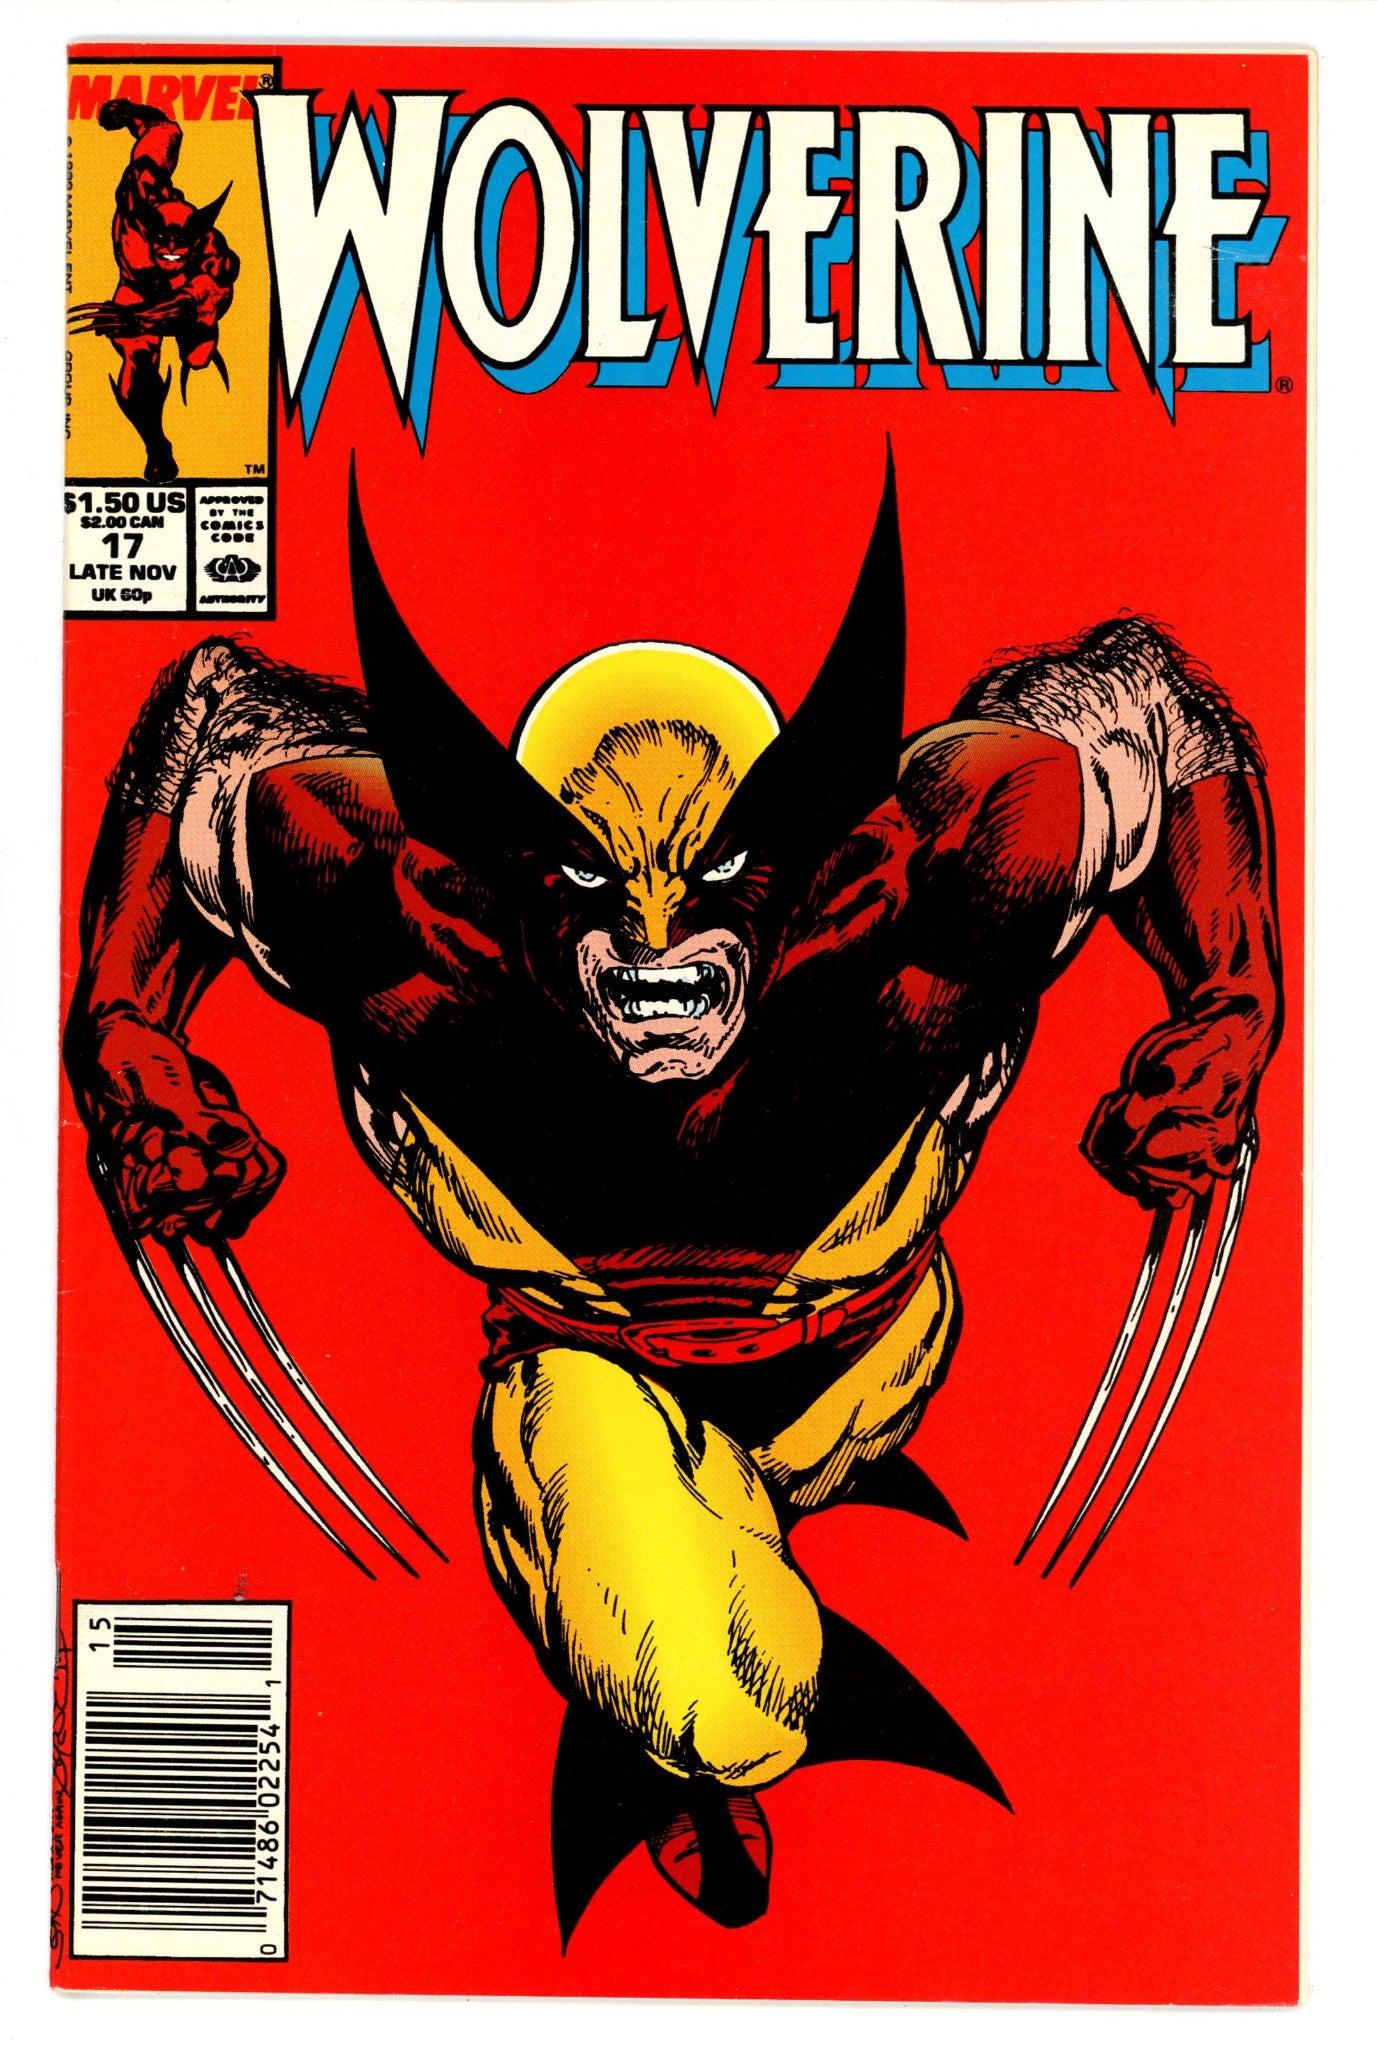 Wolverine Vol 2 17 VF (8.0) (1989) Newsstand 